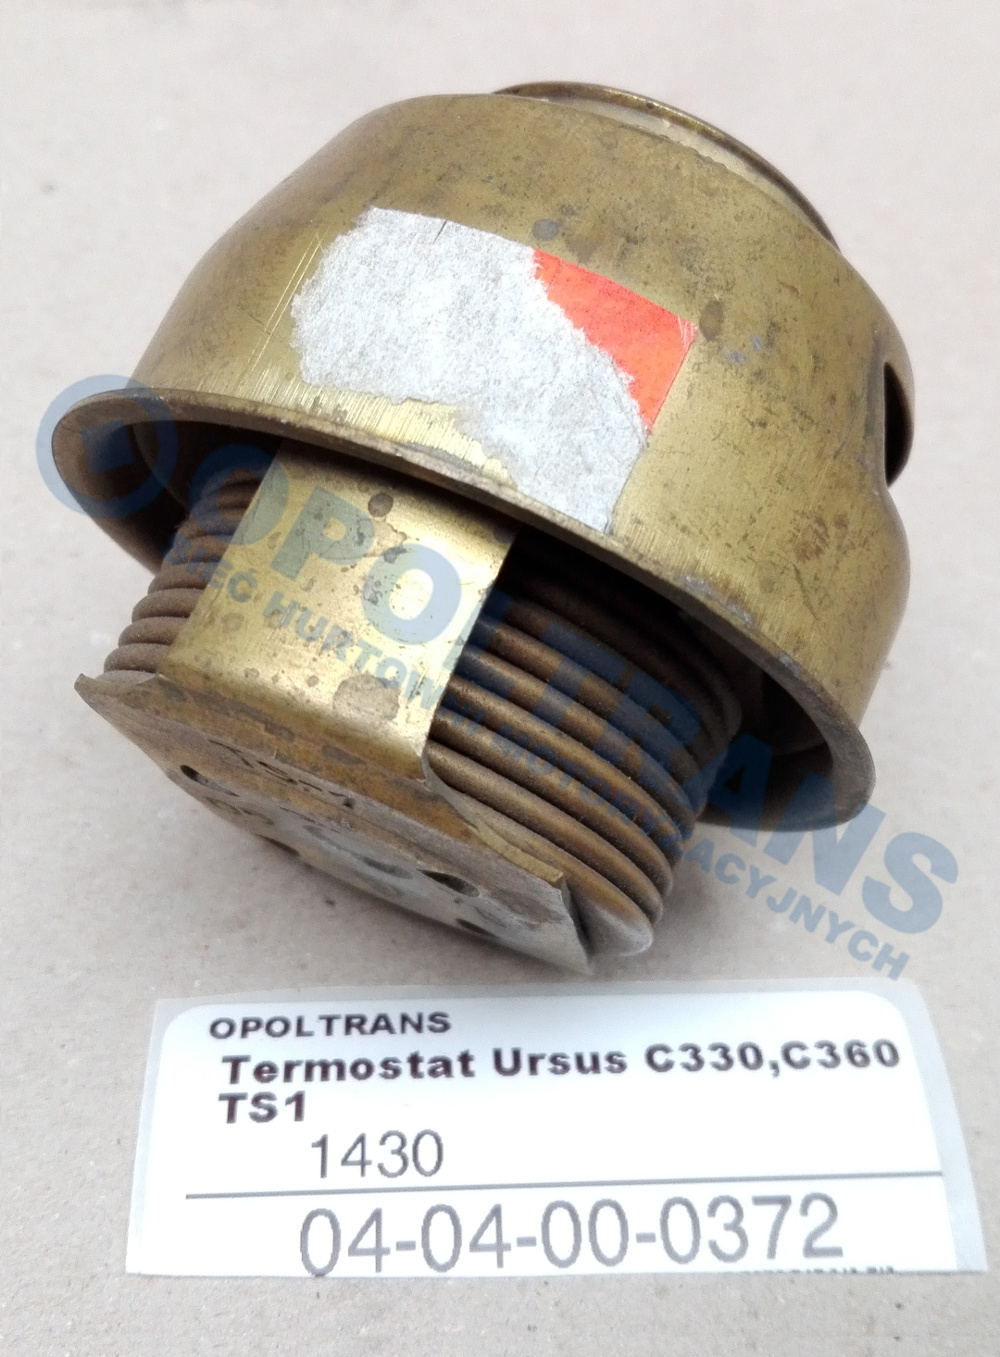  Termostat  Ursus  C330,C360  TS1 